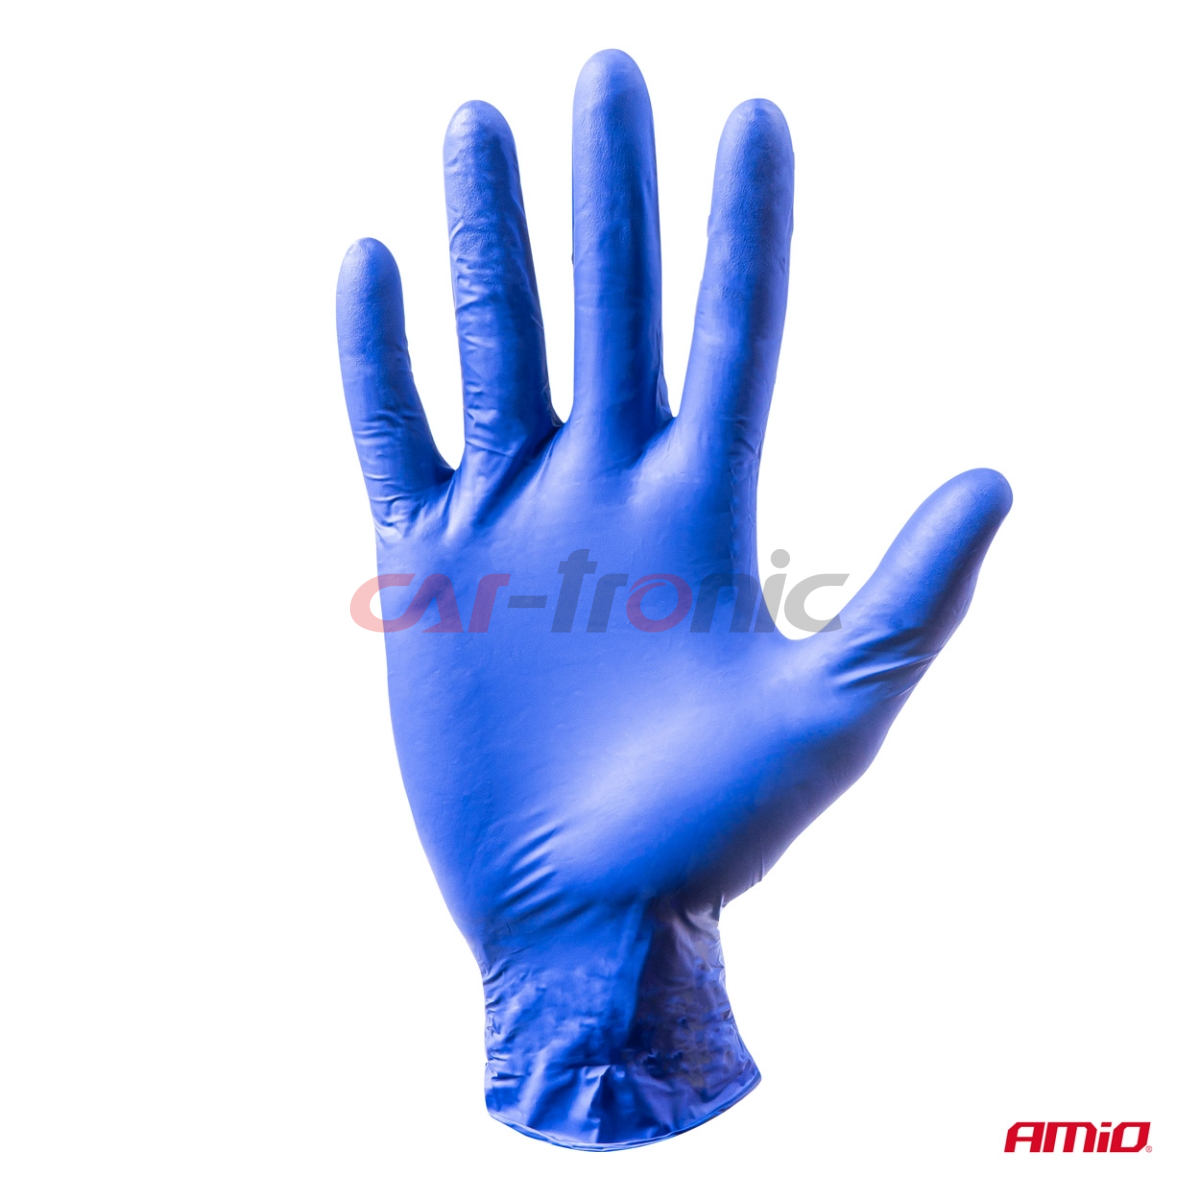 Rękawice nitrylowe niebieskie Mercator Nitrylex Basic rozmiar S 100 szt.